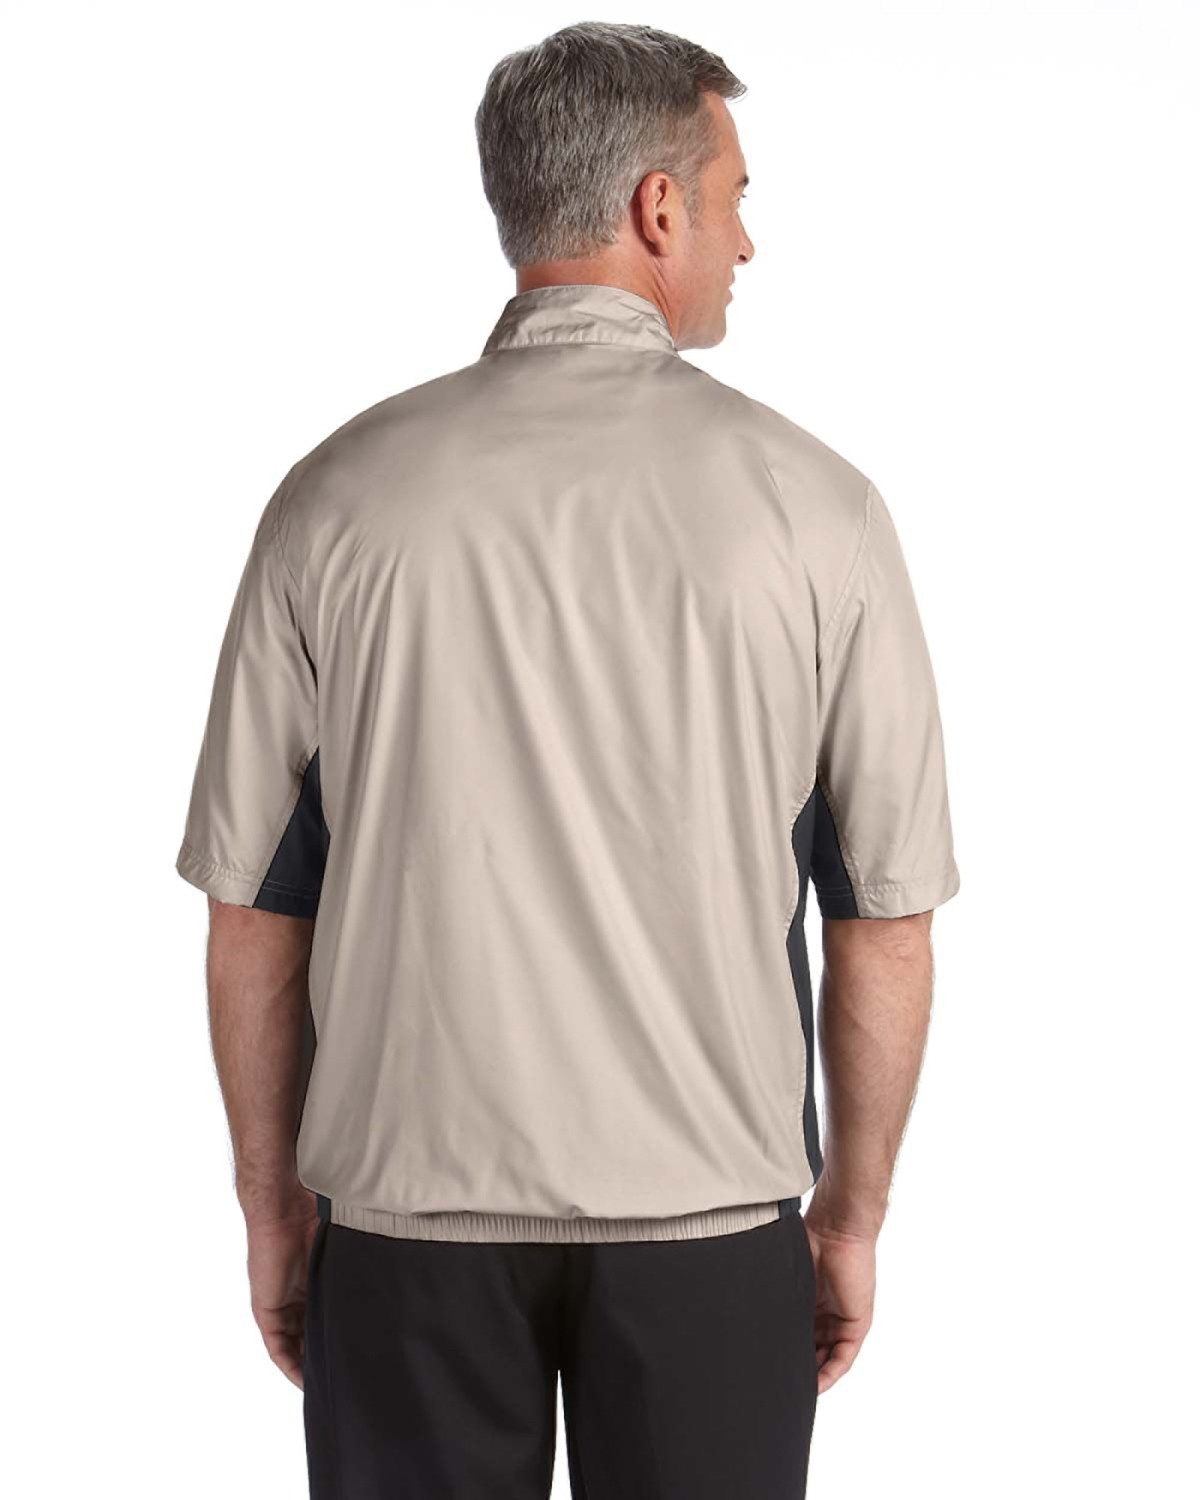 Ver weg operatie opmerking adidas Golf A167 Men's climalite Colorblock Half-Zip Wind Shirt